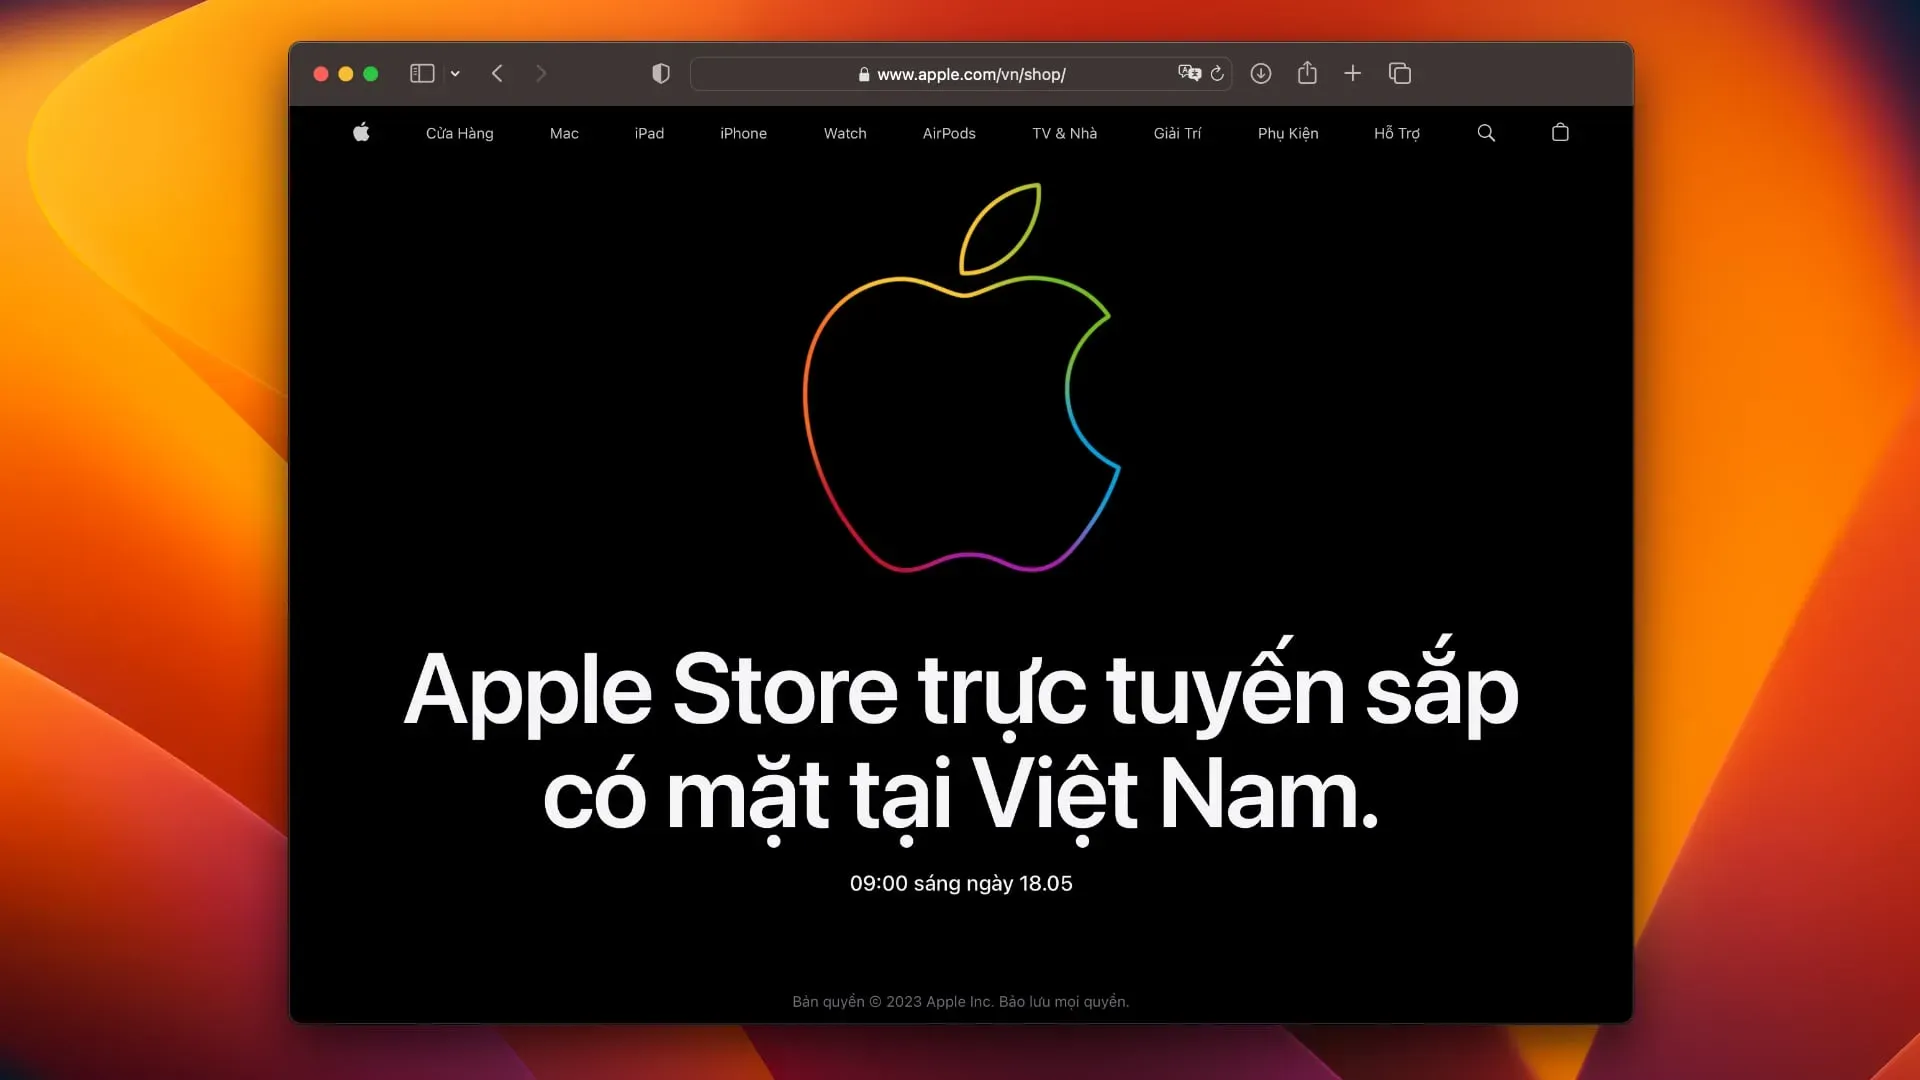 Il negozio online vietnamita di Apple in Safari annuncia l'apertura il 23 maggio